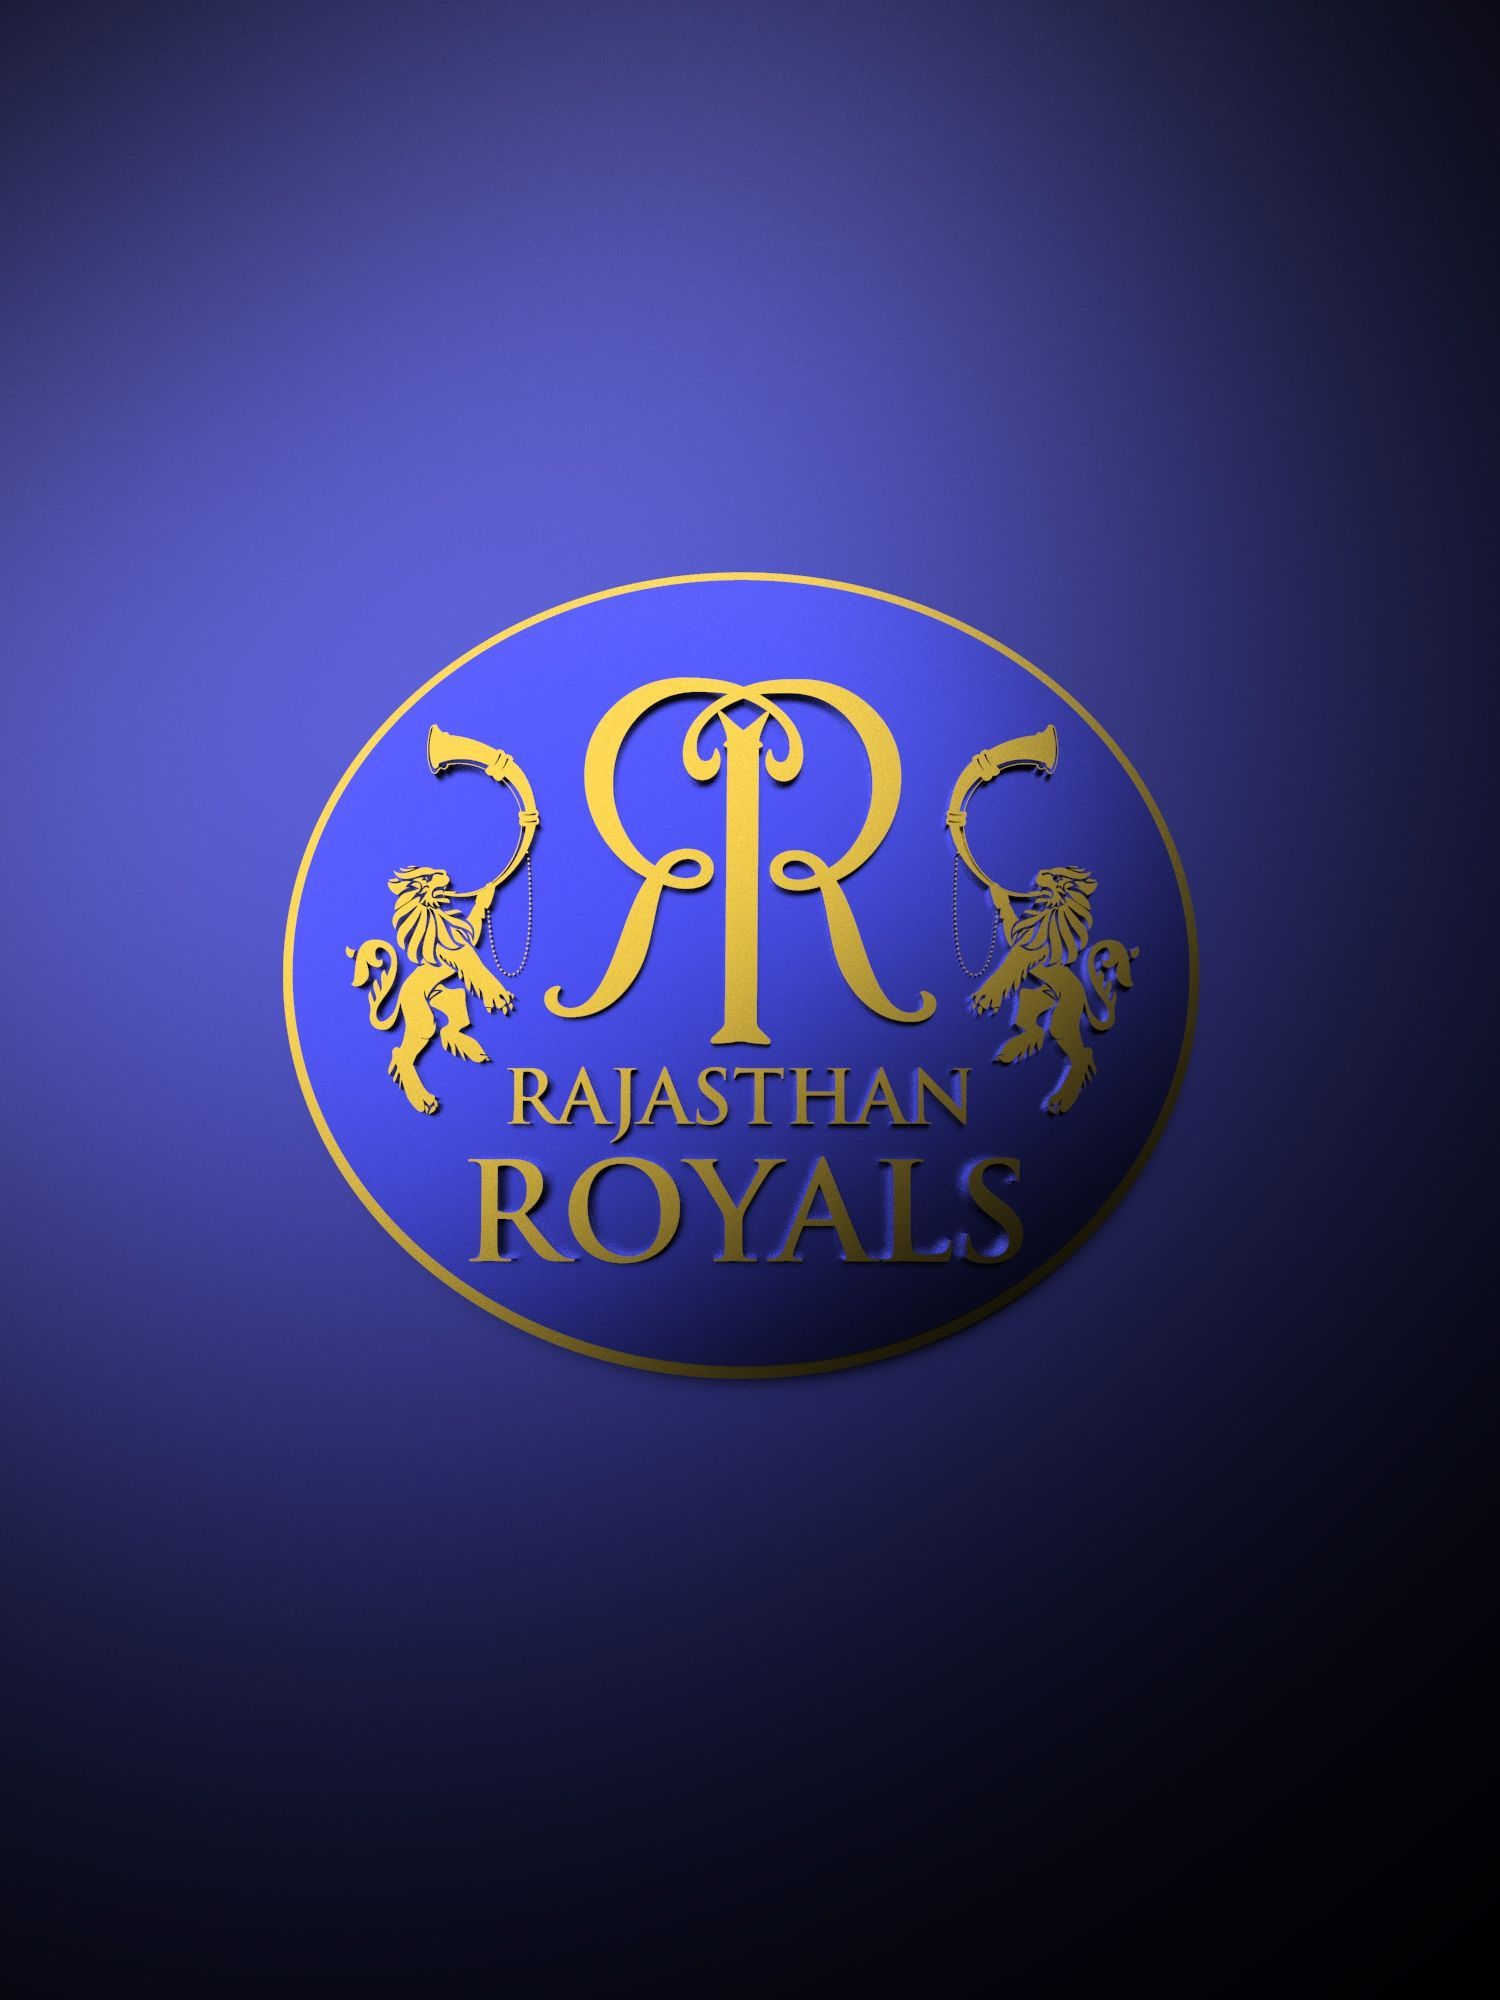 Rajasthan Royals IPL metallic logo poster painting. Royal logo, Ipl, Rajasthan